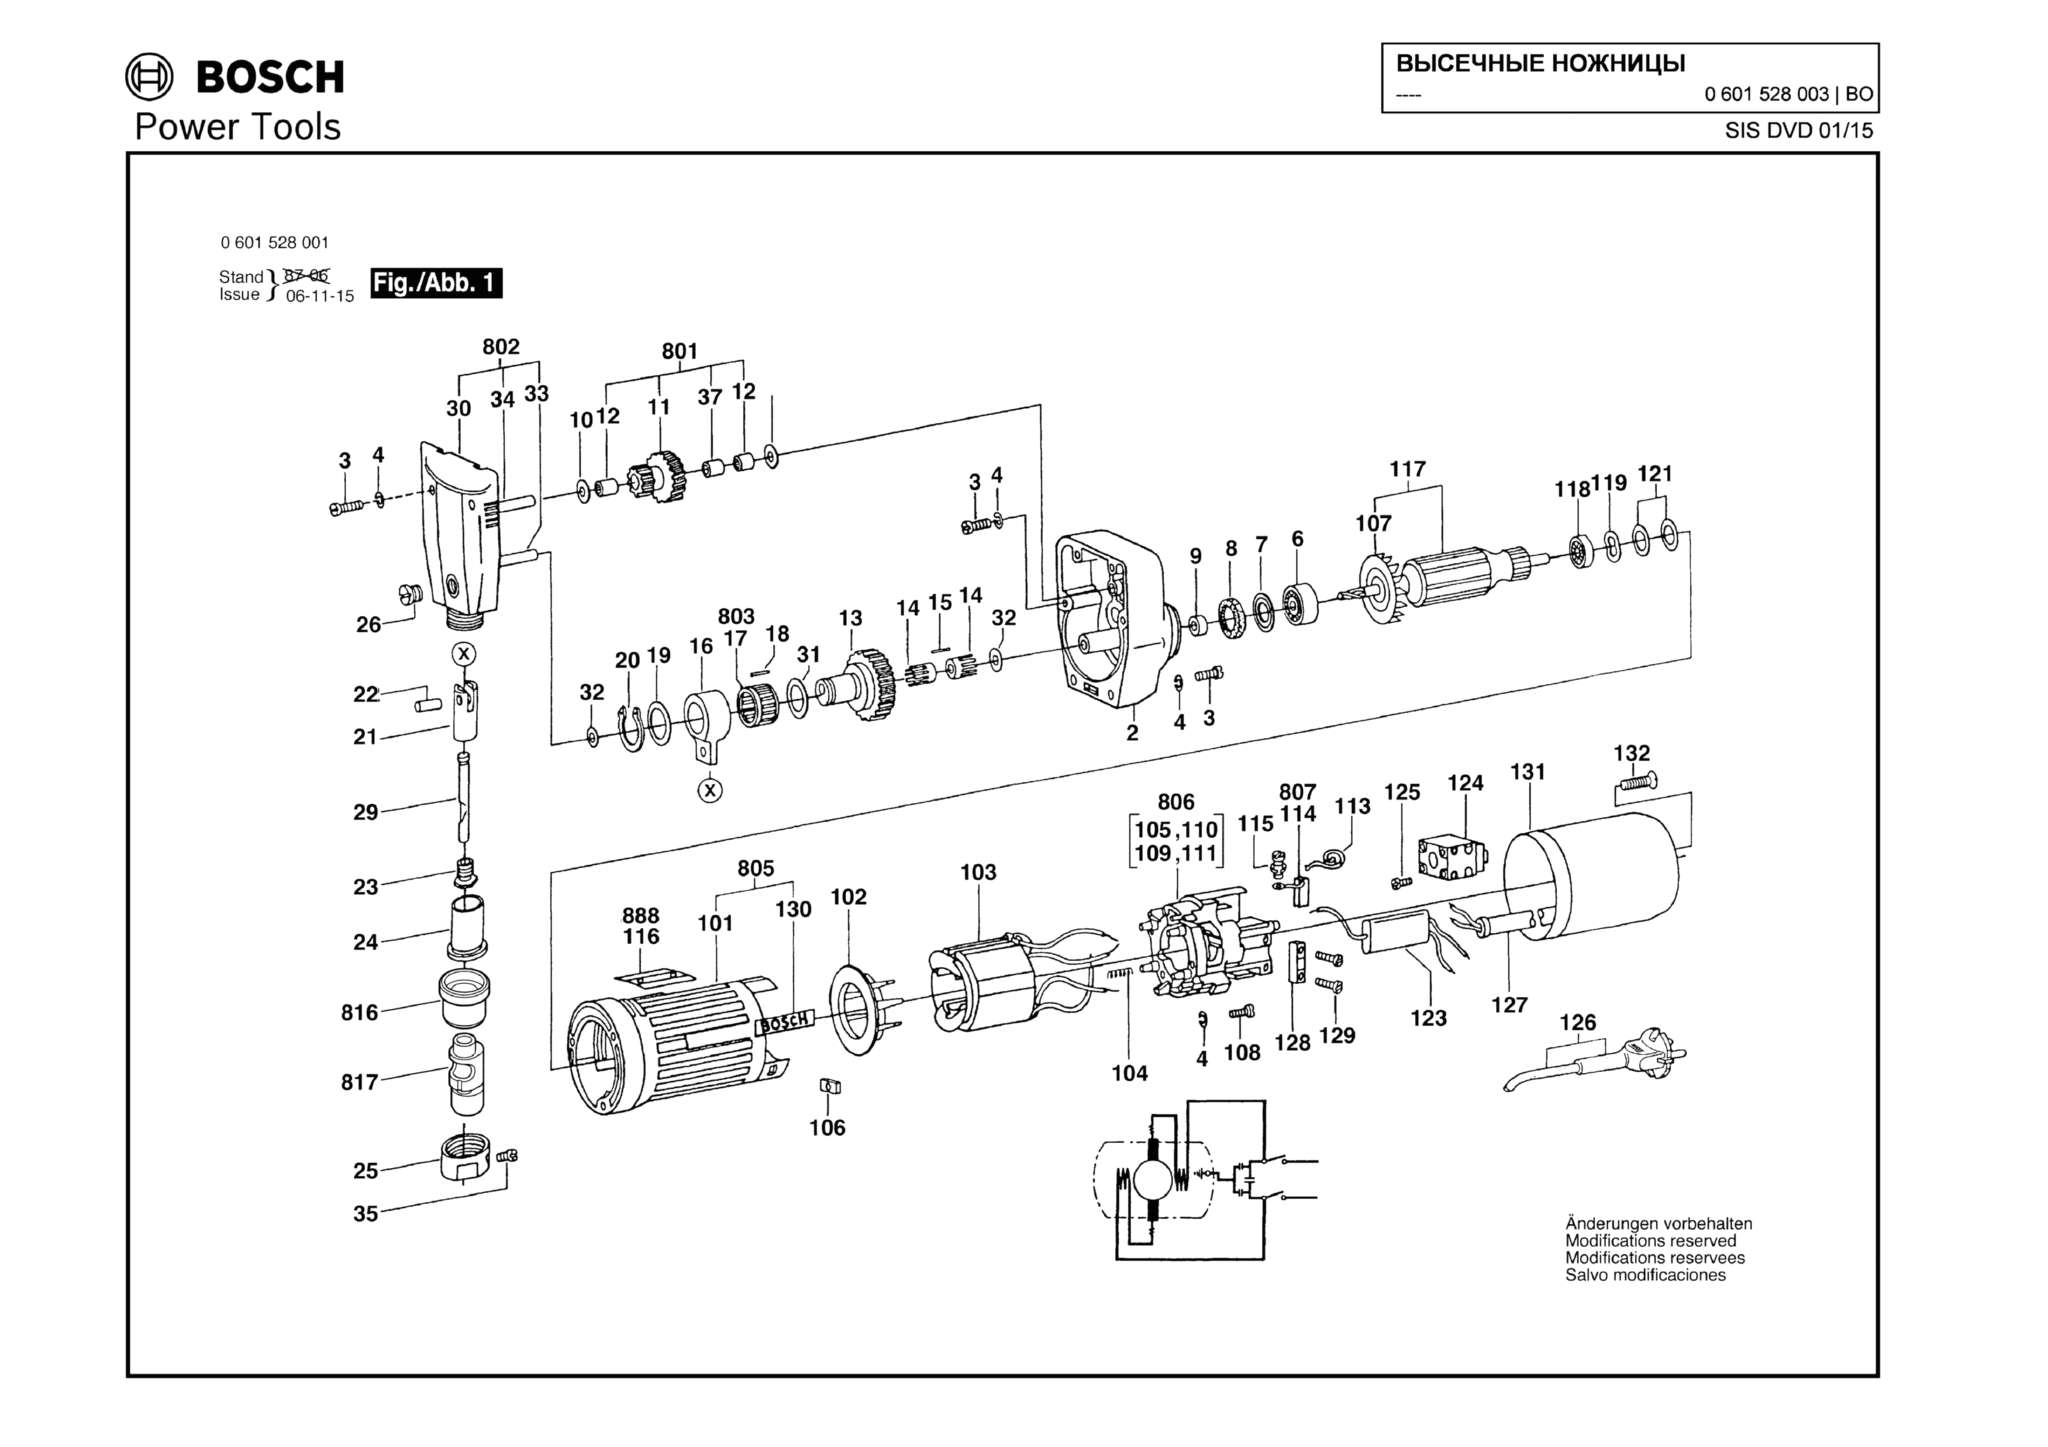 Запчасти, схема и деталировка Bosch (ТИП 0601528003)